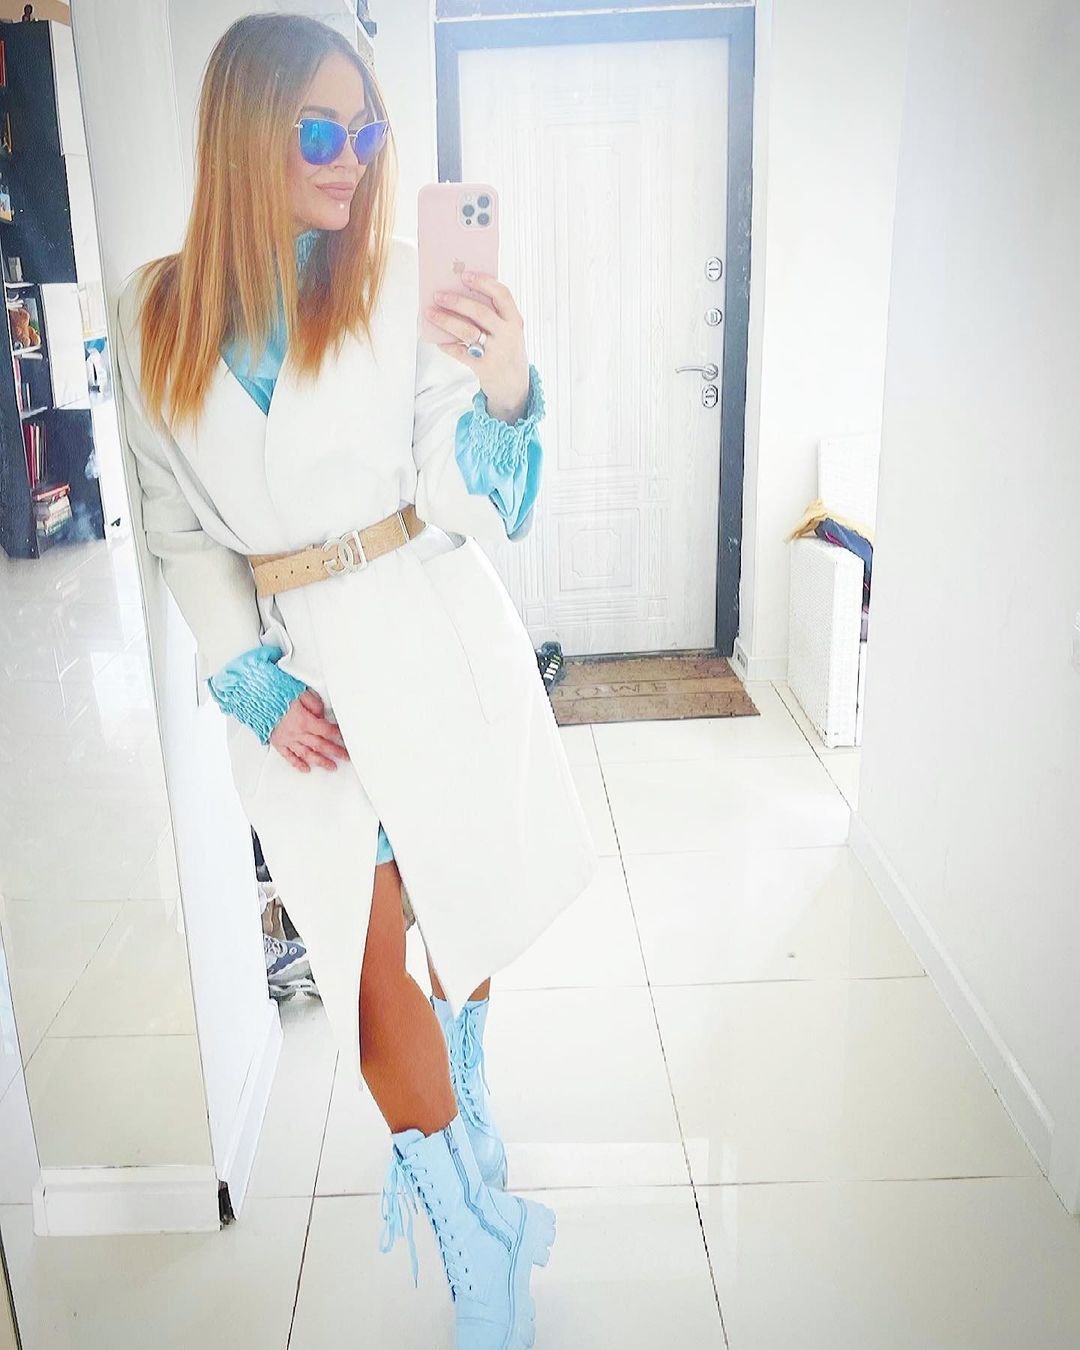 Таня Терёшина сделала селфи в эффектном белом пальто и голубых ботинках